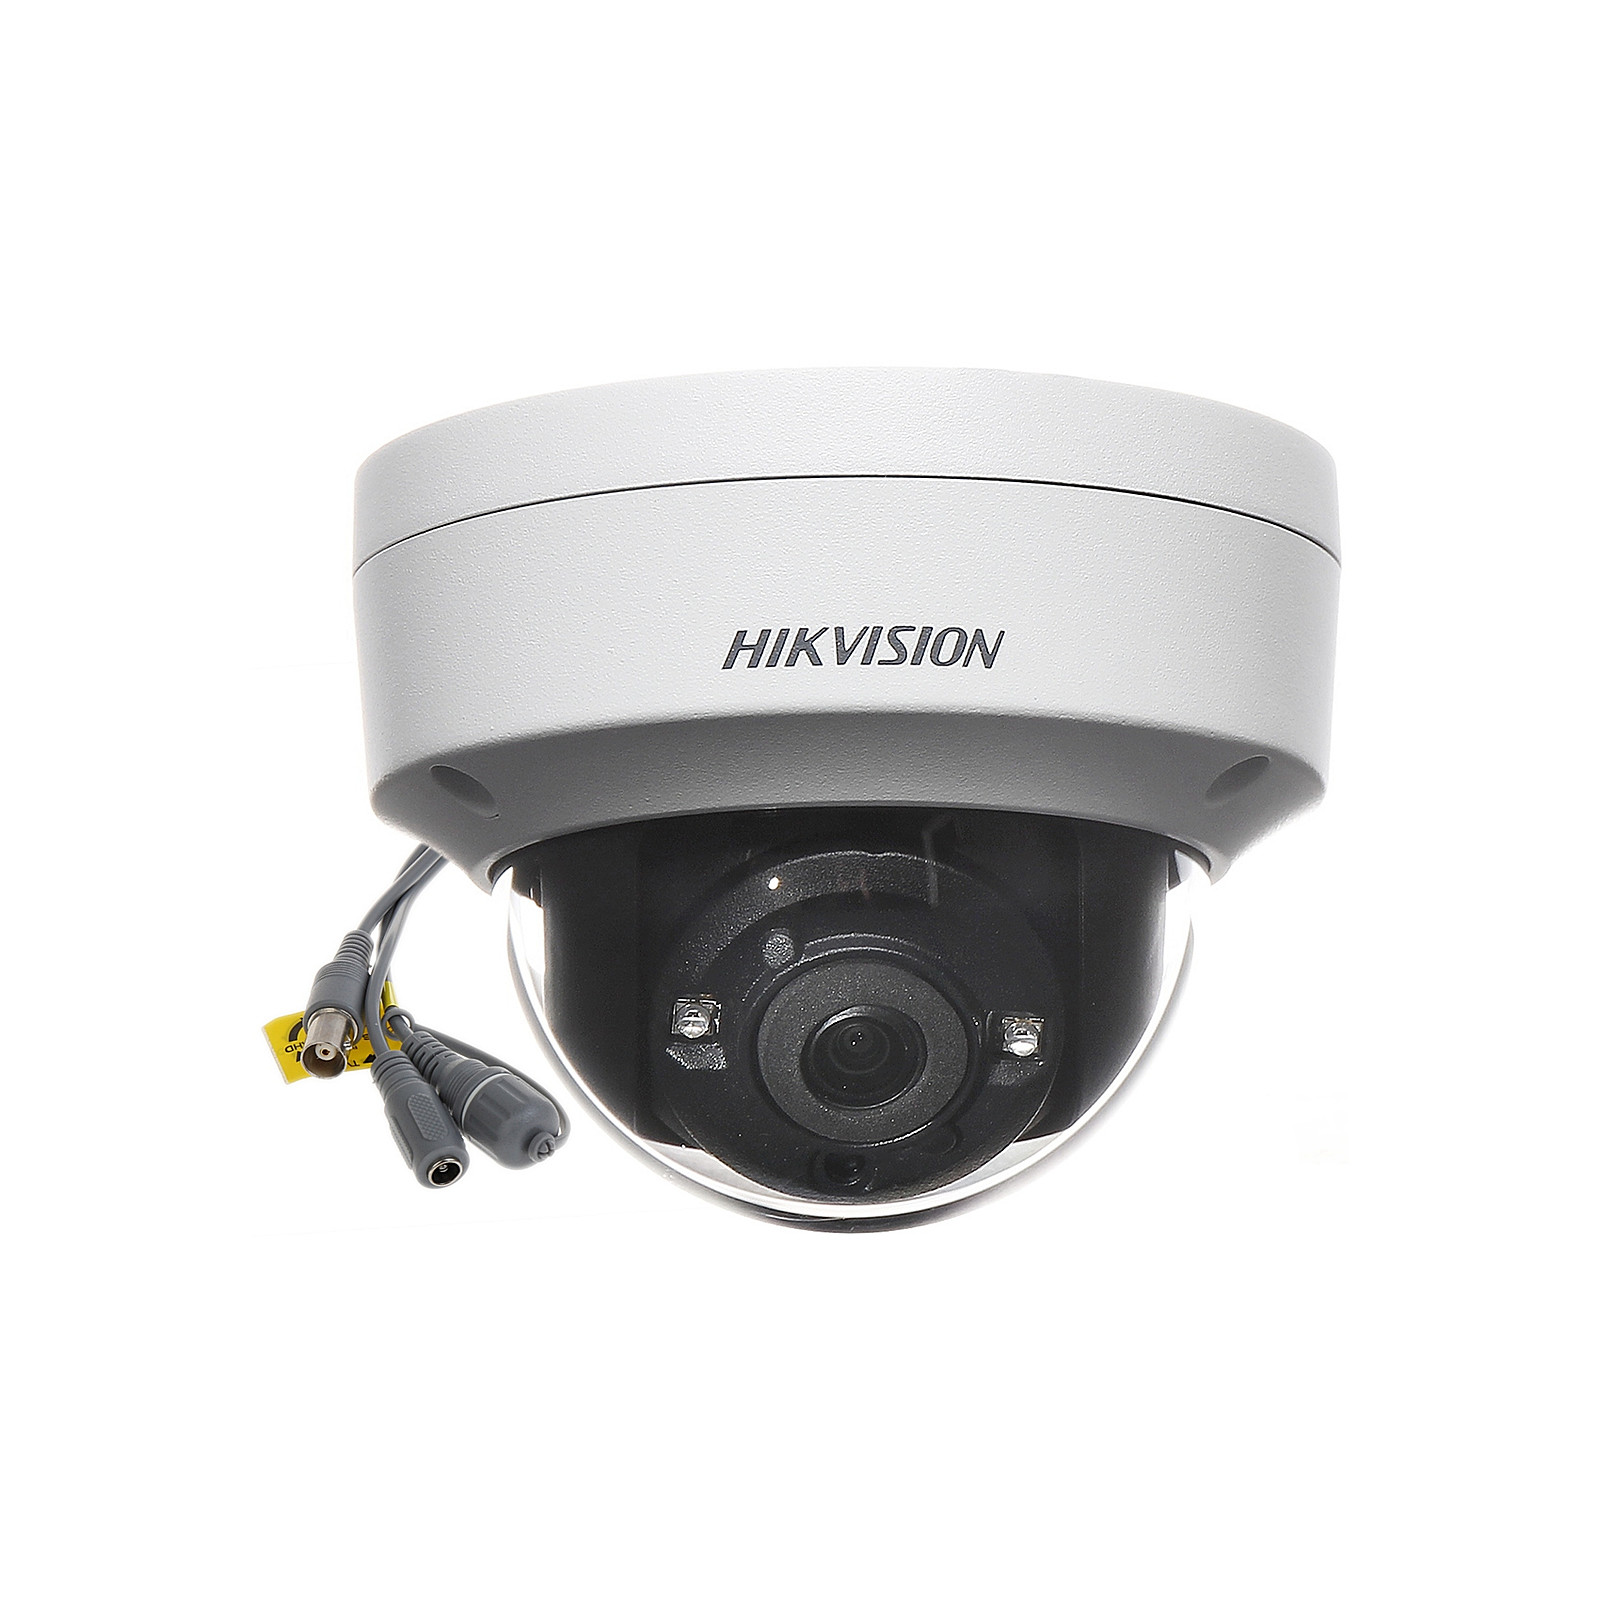 Hikvision Camera dome exterieur DS-2CE56D8T-VPITF - Camera de surveillance Hikvision